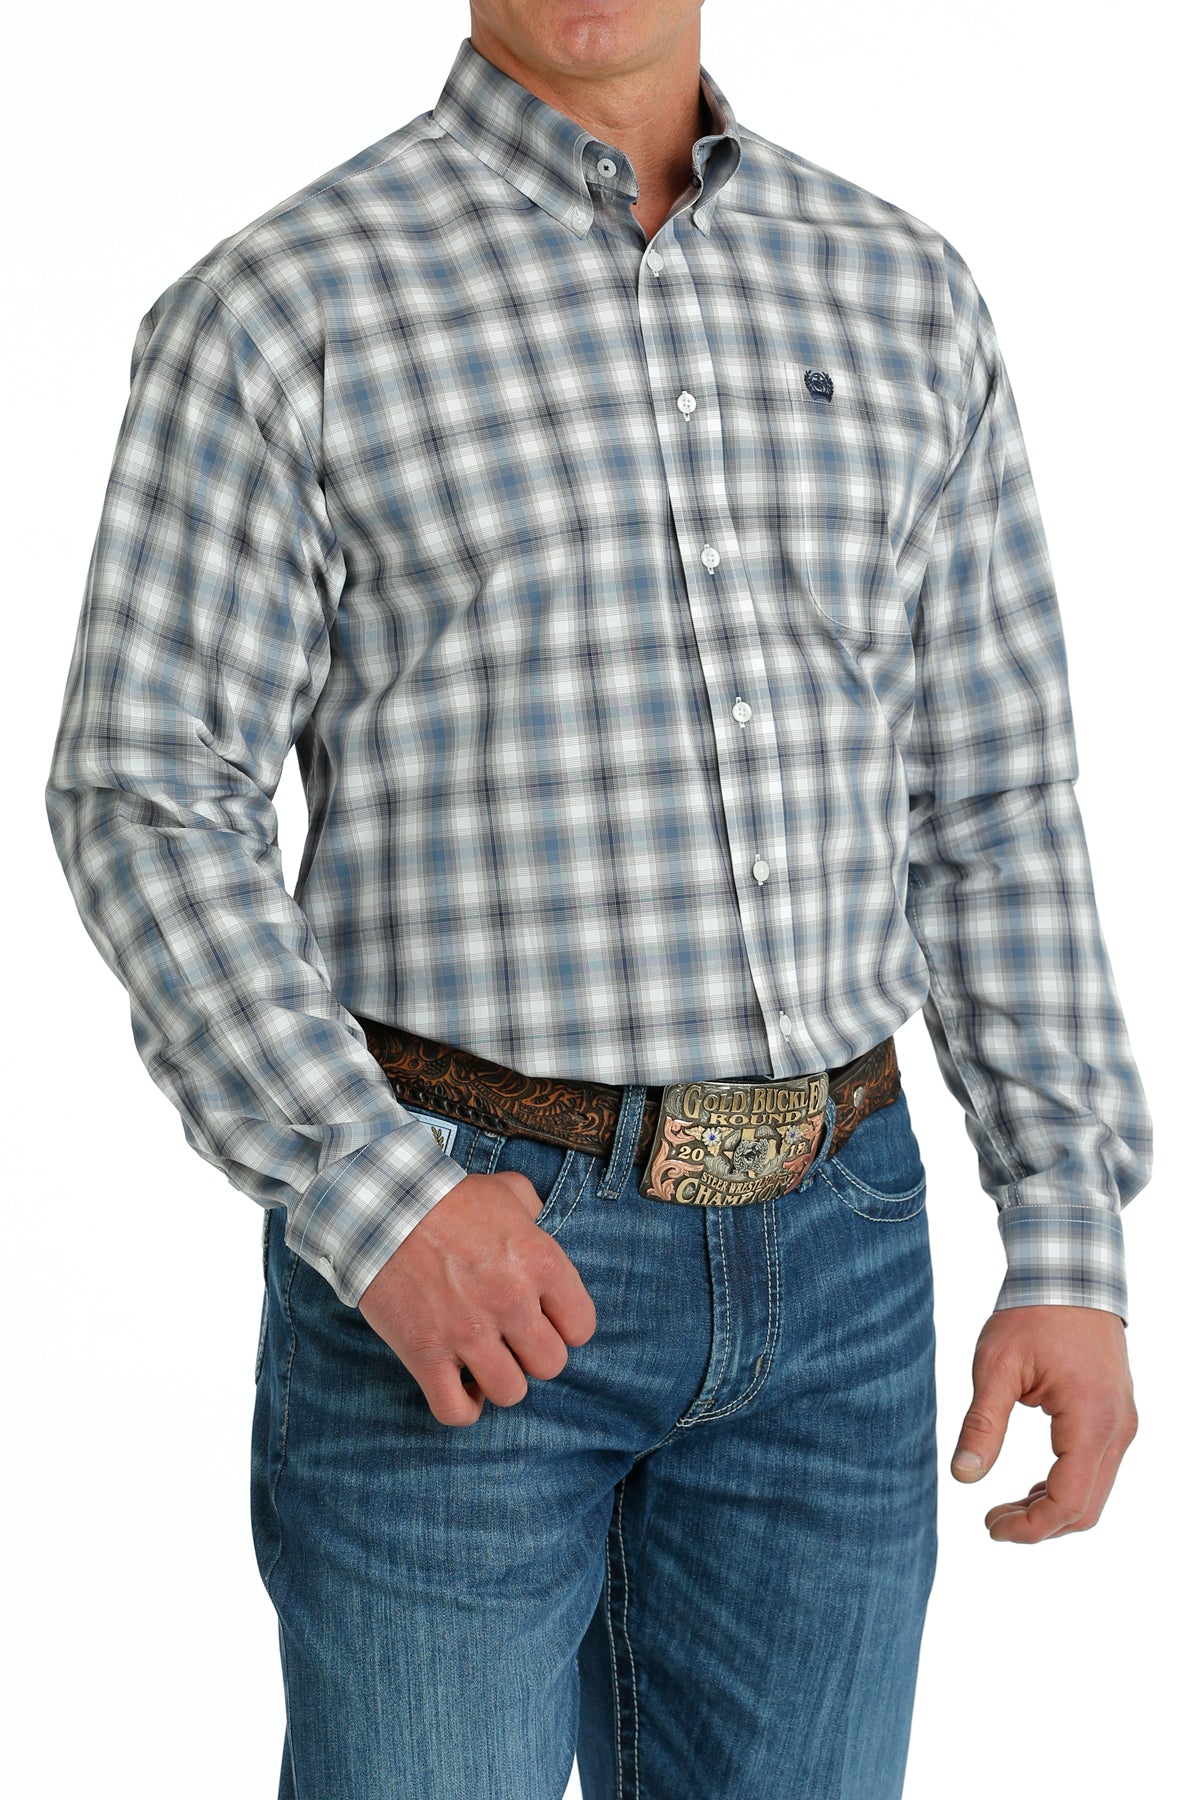 Men's Cinch Large Blue/White Plaid Button Down Shirt